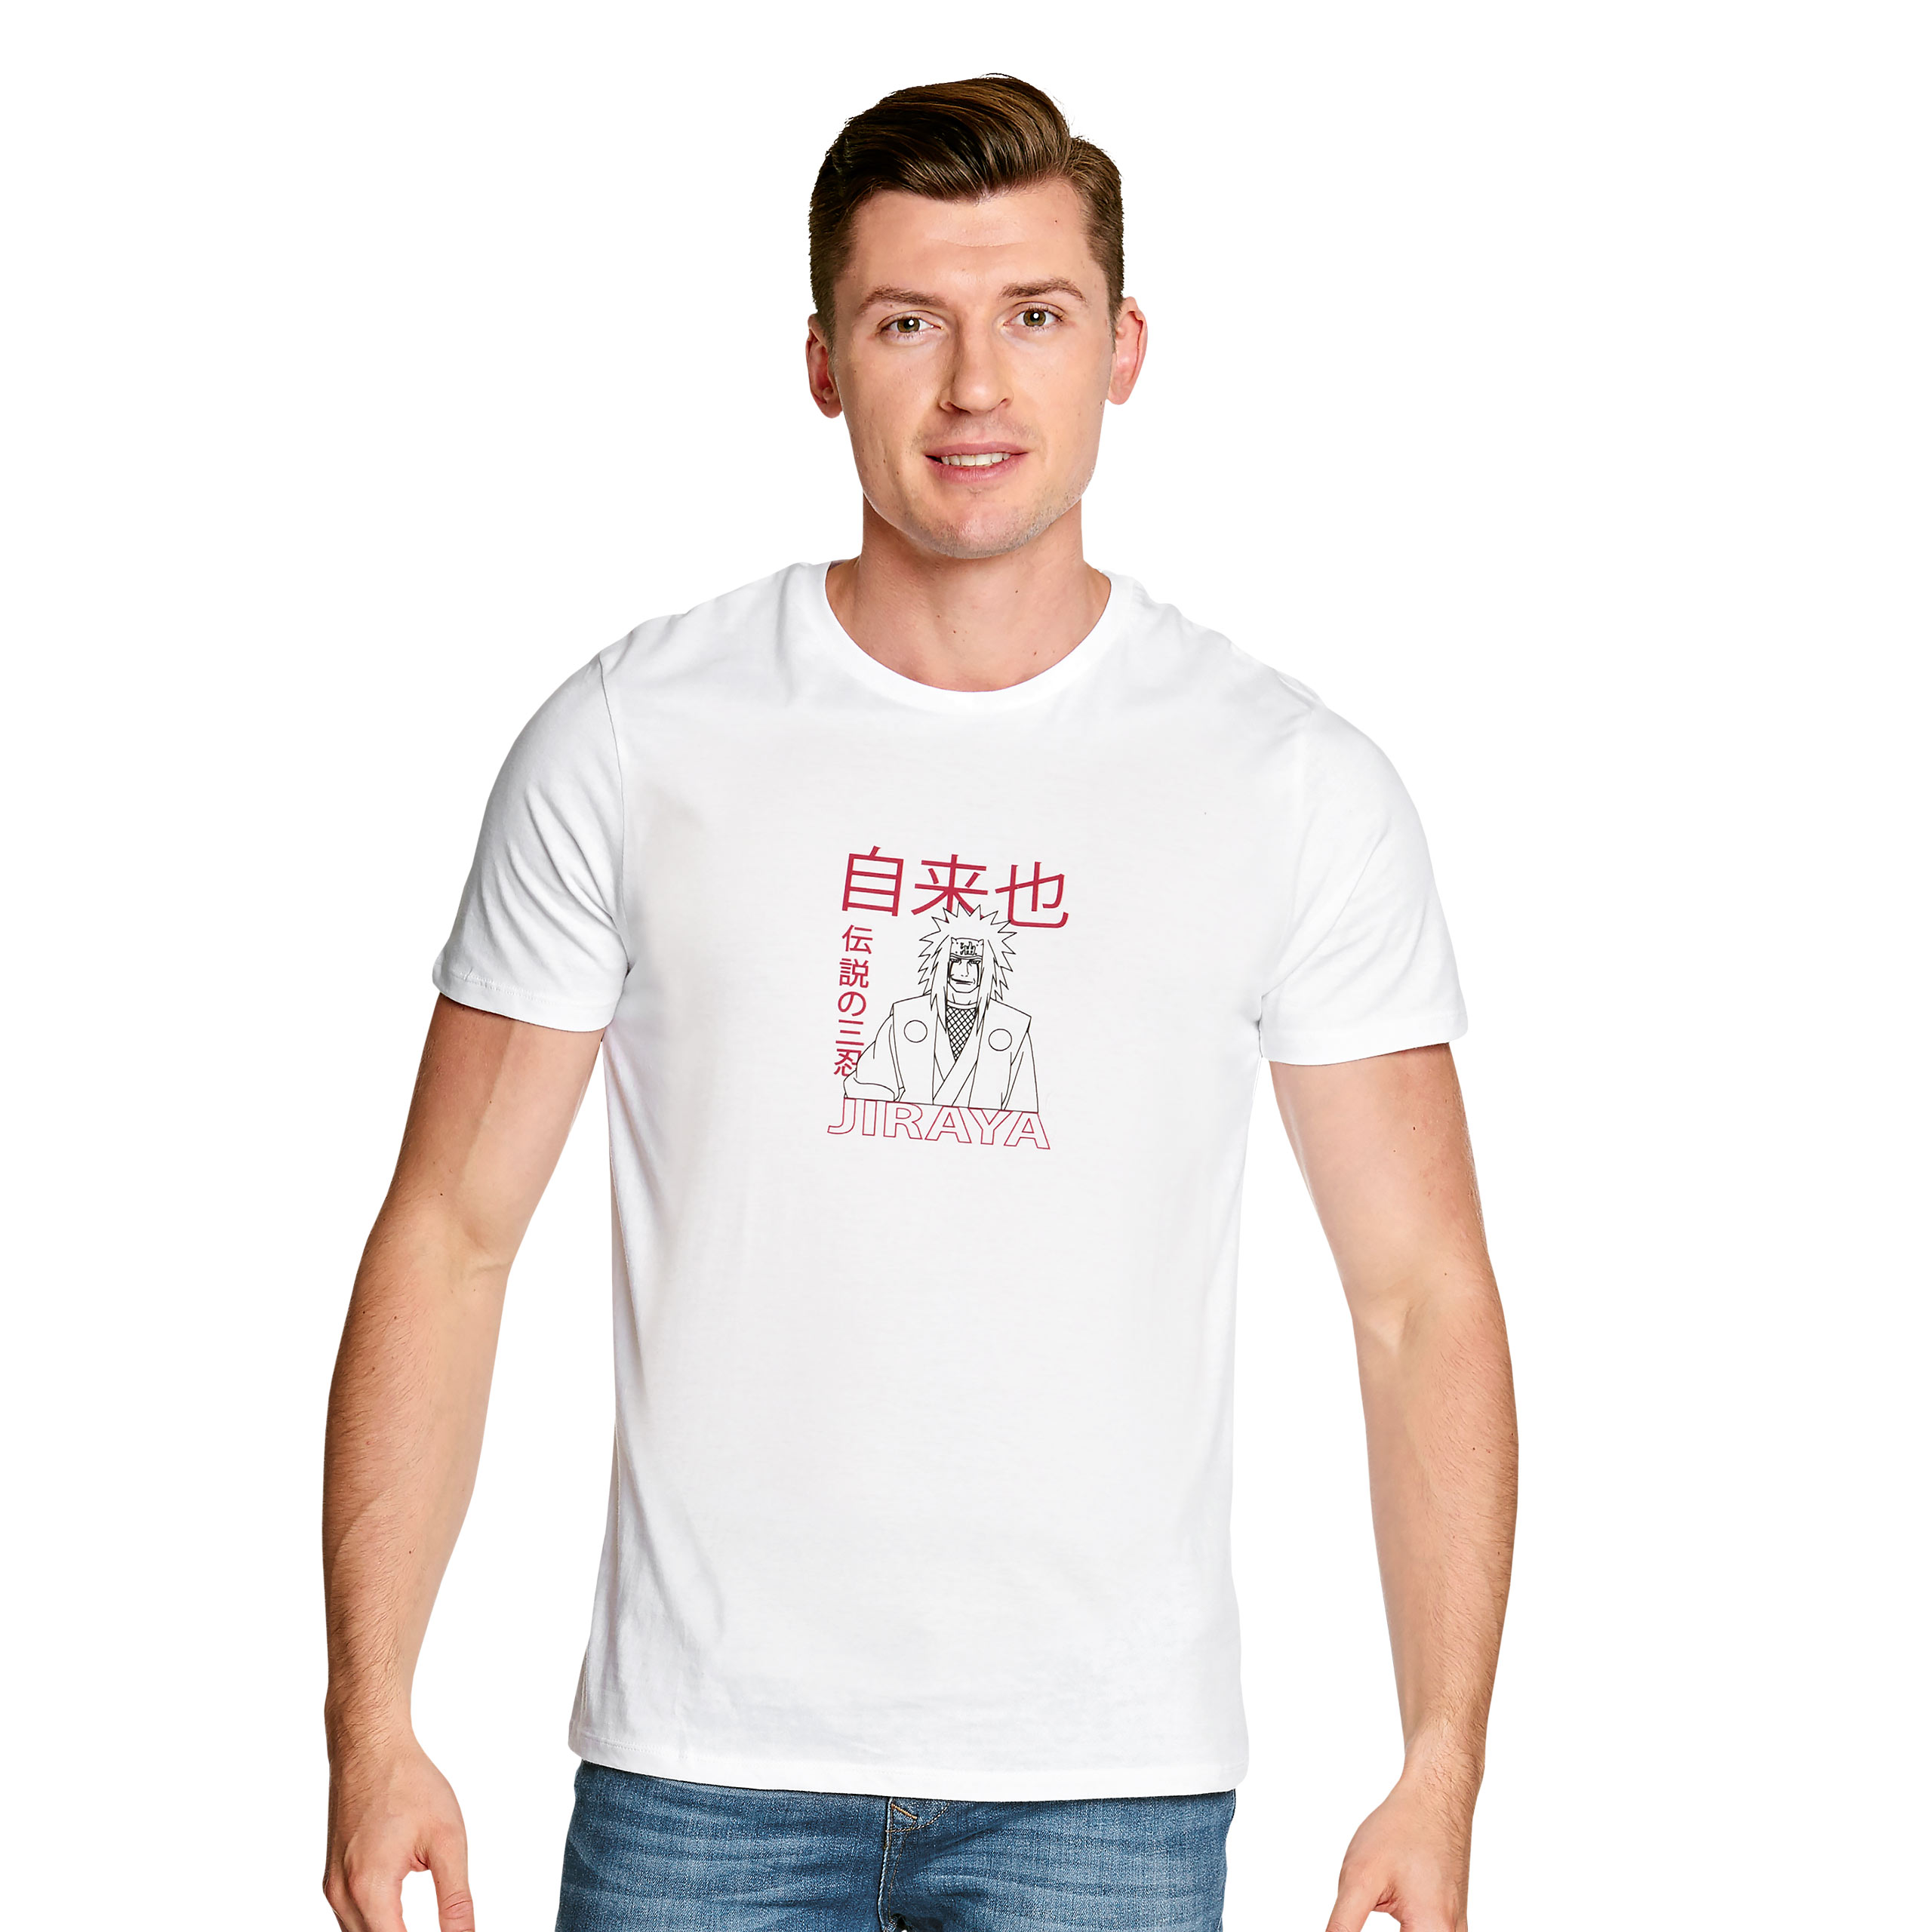 Naruto - Jiraya T-shirt wit